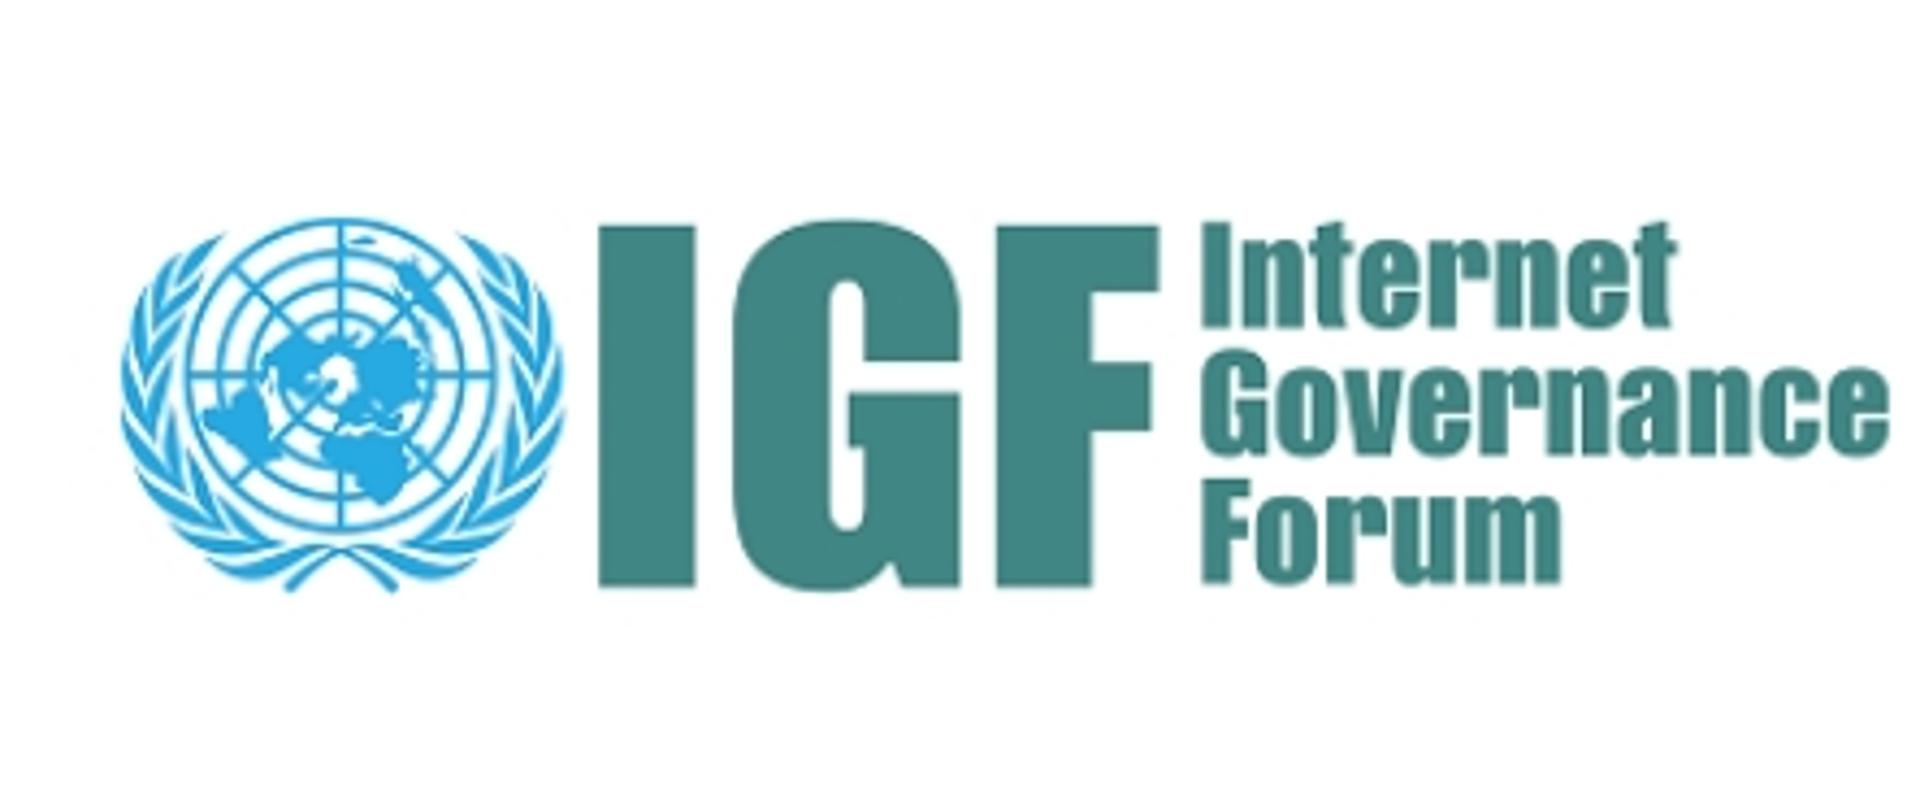 Zdjęcie przedstawia logotyp ONZ z napisem IGF - Internet Governance Forum